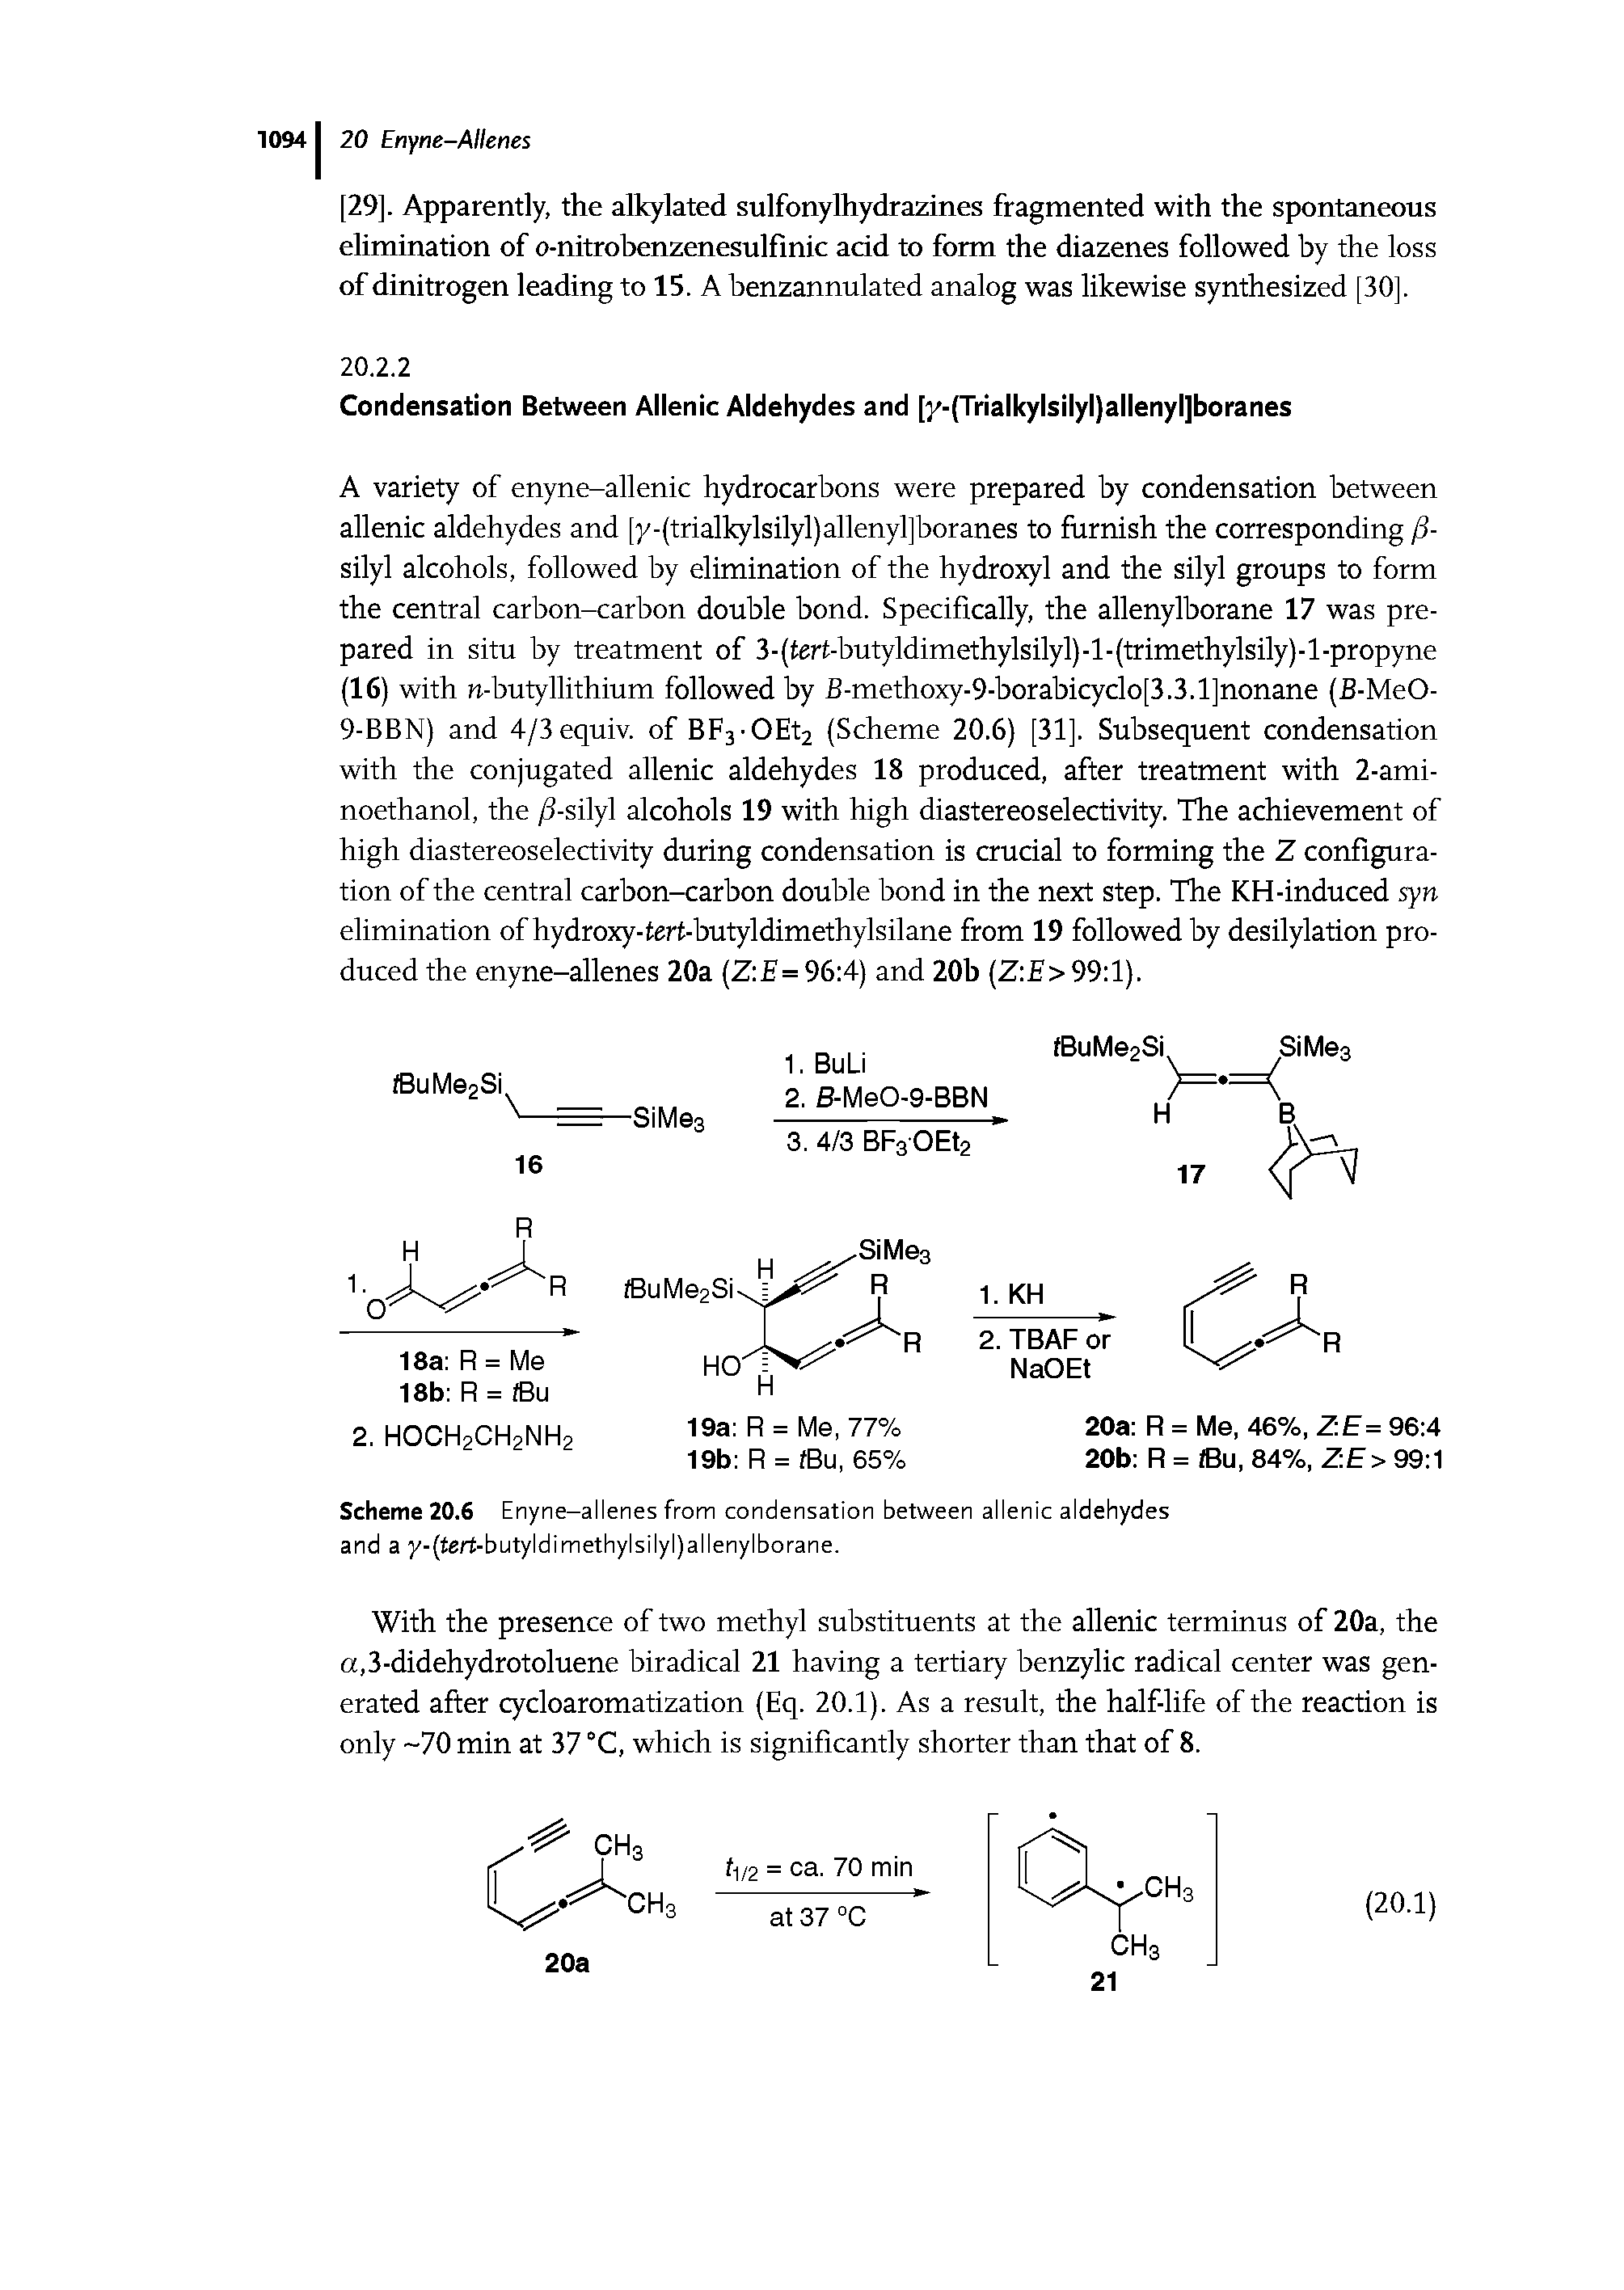 Scheme 20.6 Enyne-allenes from condensation between allenic aldehydes and a y-(tert-butyldimethylsilyl)allenylborane.